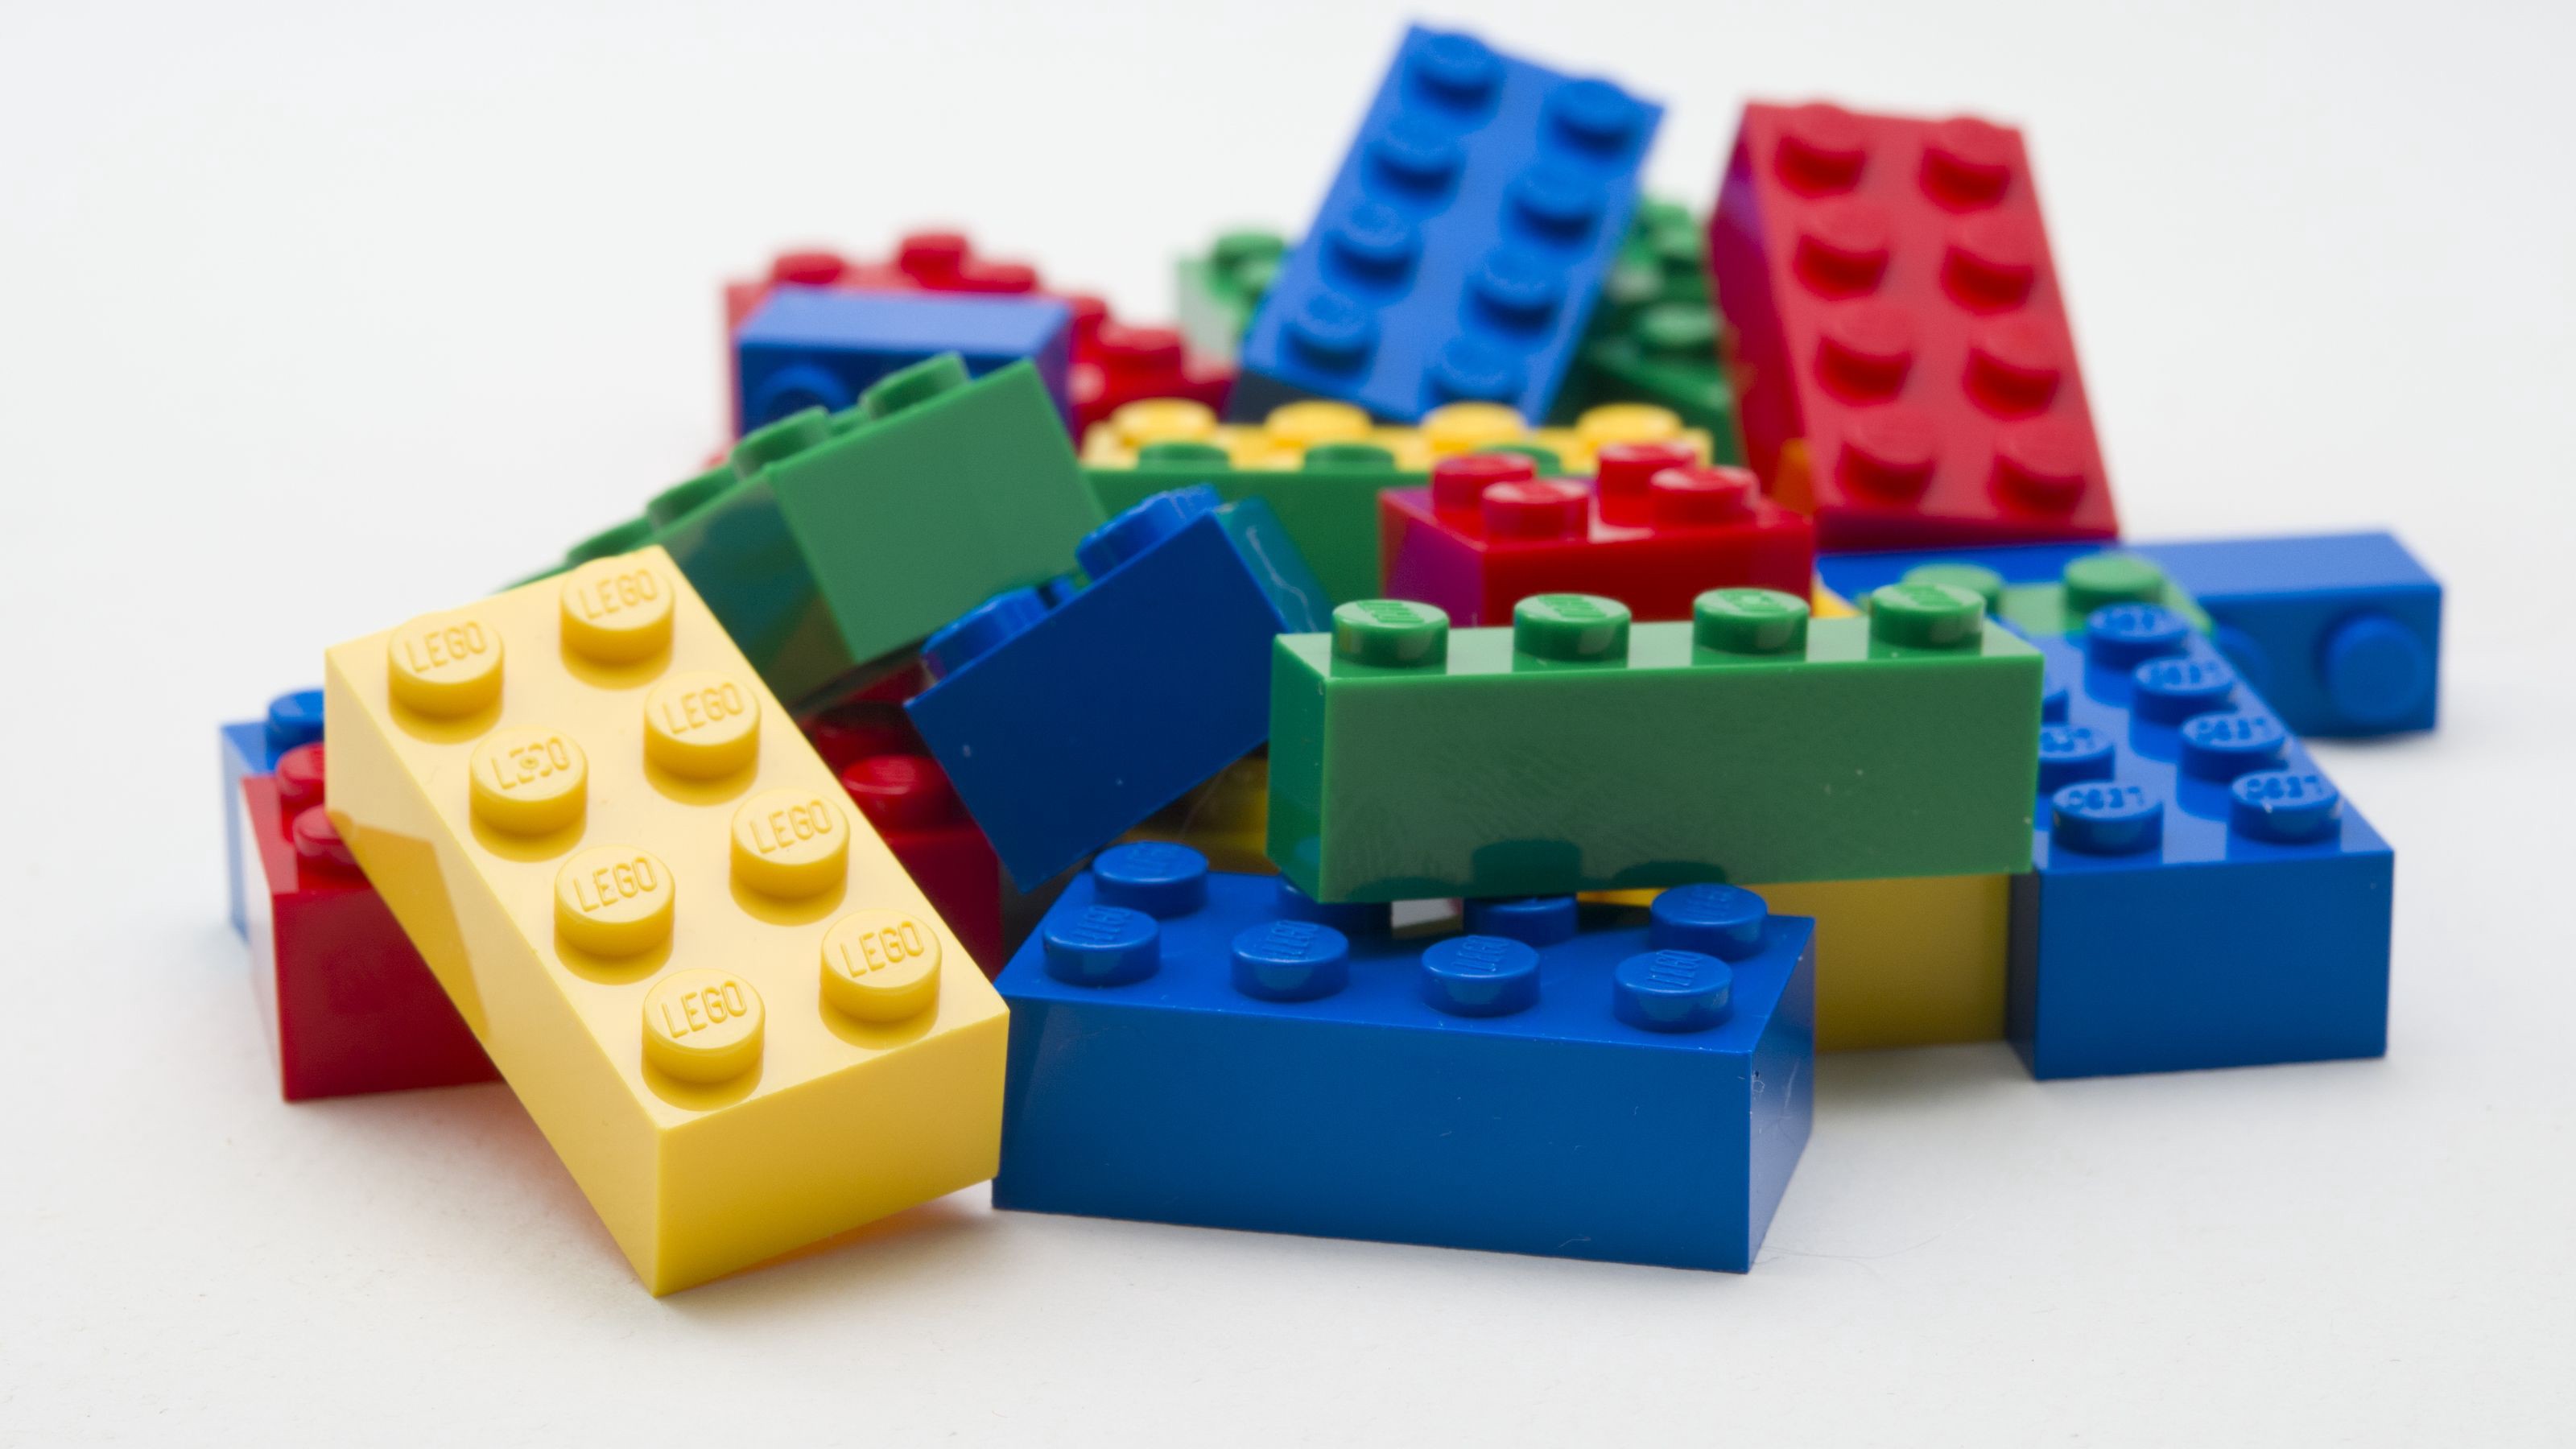 2. Tìm hiểu về Các phần cấu tạo Lego 12 con giáp